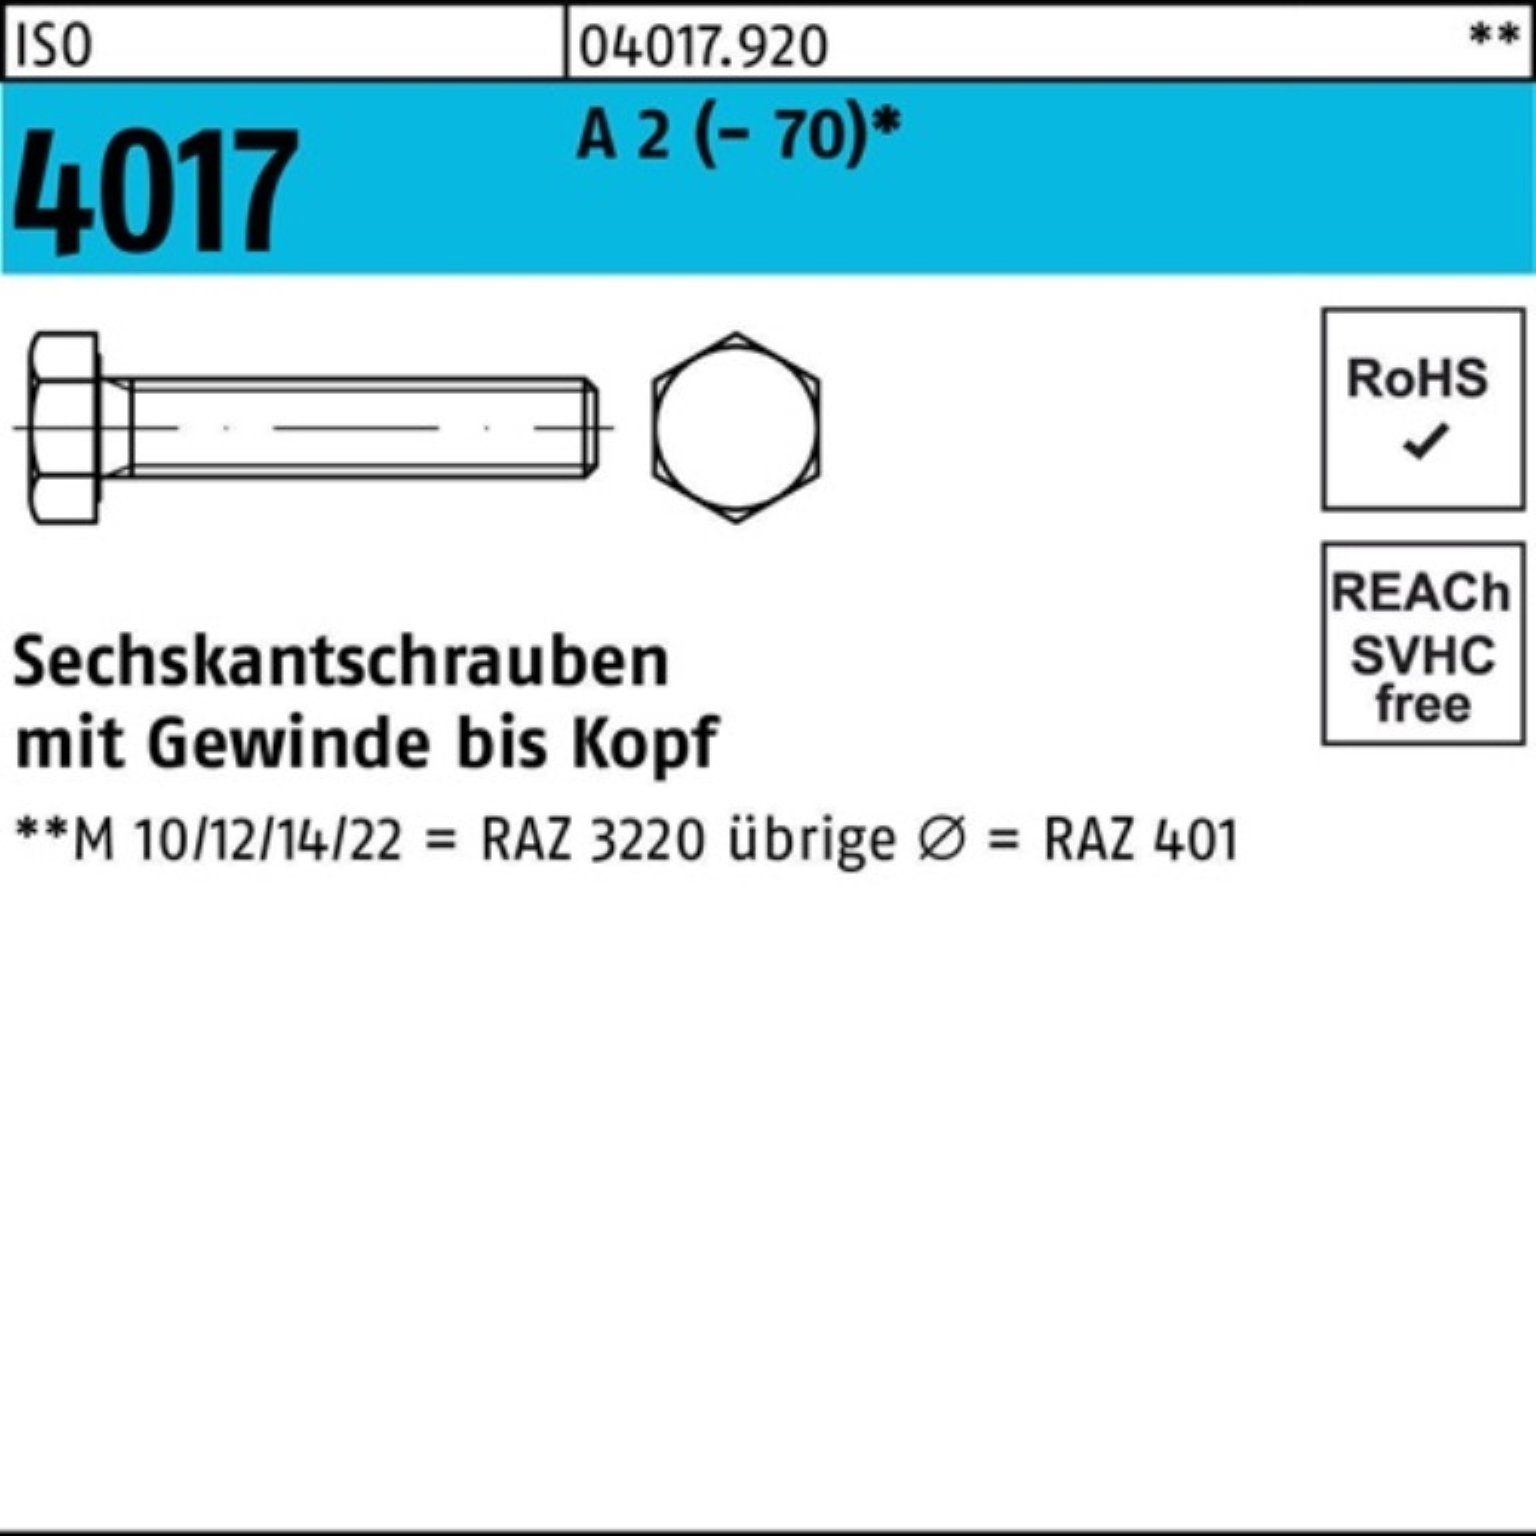 Bufab Sechskantschraube 100er Pack Sechskantschraube ISO 4017 VG M20x 65 A 2 (70) 25 Stück